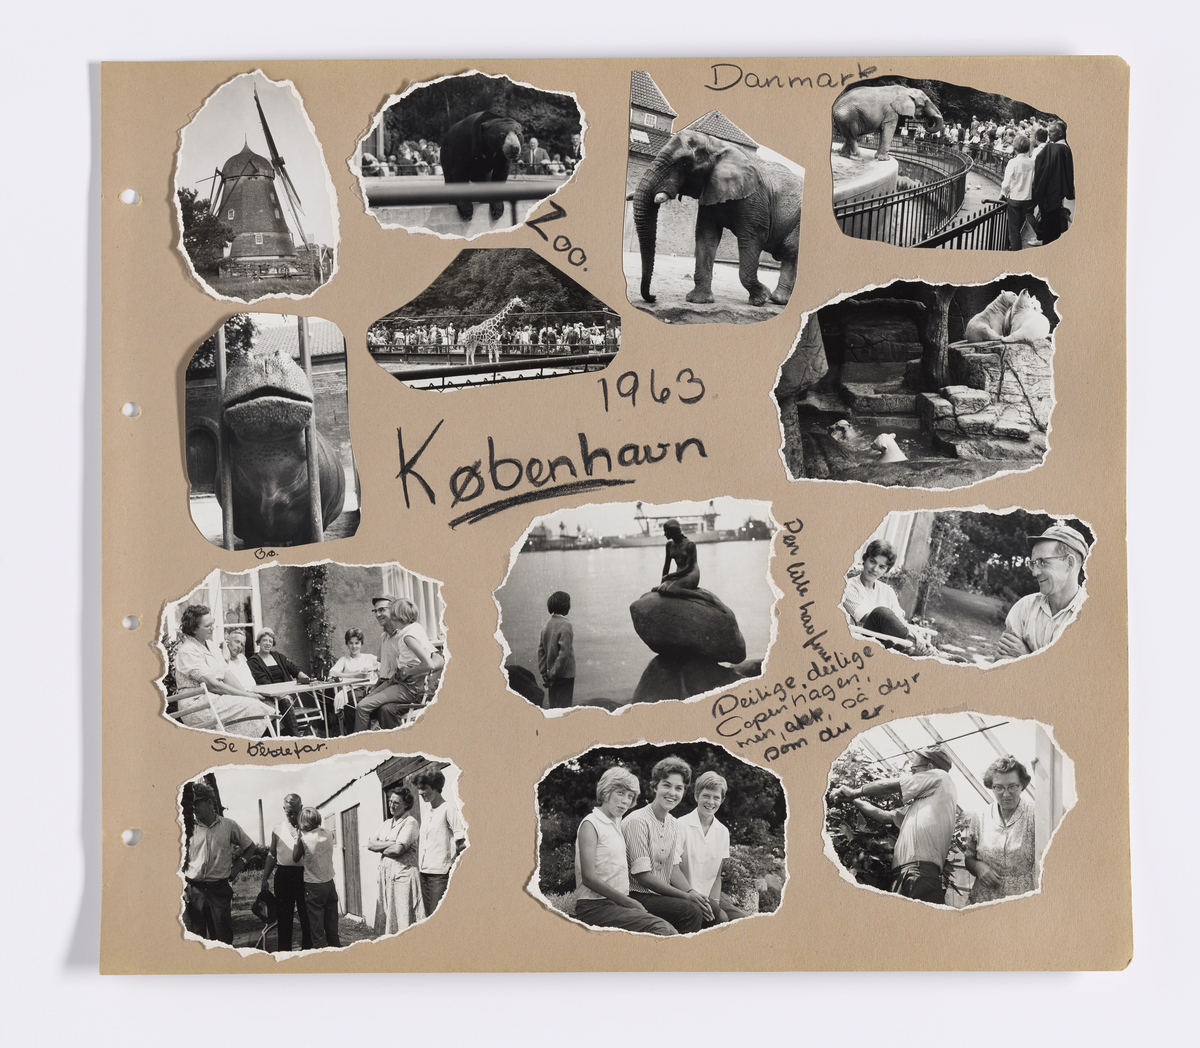 Albumet inneholder barnebilder av Synnøve Brænsdhøi sin datter Mette Digerud Brænsdhøi i alderen 7 til 16 år (1954 - 1965).  

Avbildet personer: Mette Digerud Brændsøi, Synnøve Brænsdhøi, Knut Kristian Brændshøi, Kari Brændsøi, .